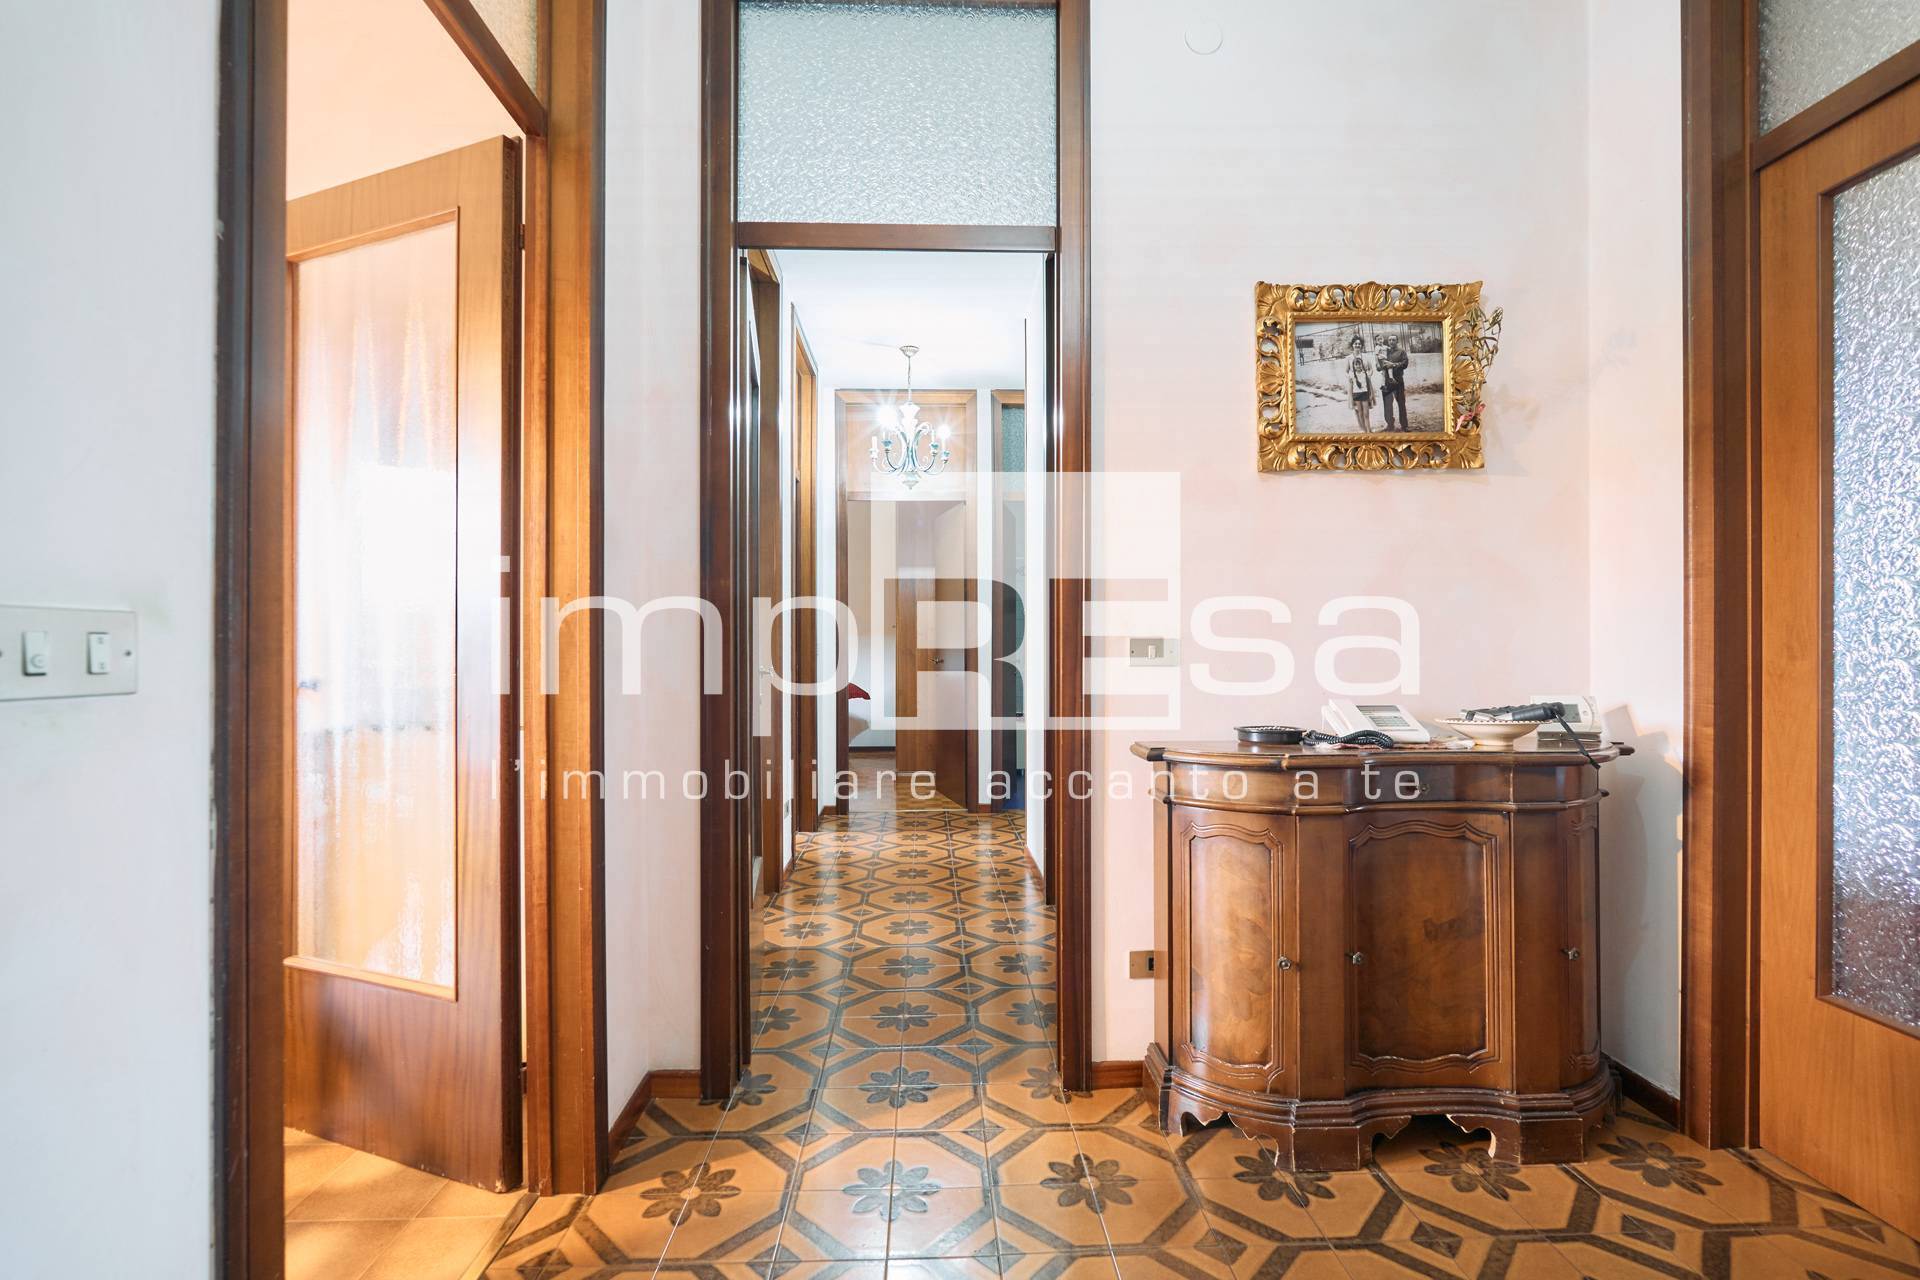 Appartamento in vendita a Conegliano, 5 locali, prezzo € 99.000 | PortaleAgenzieImmobiliari.it